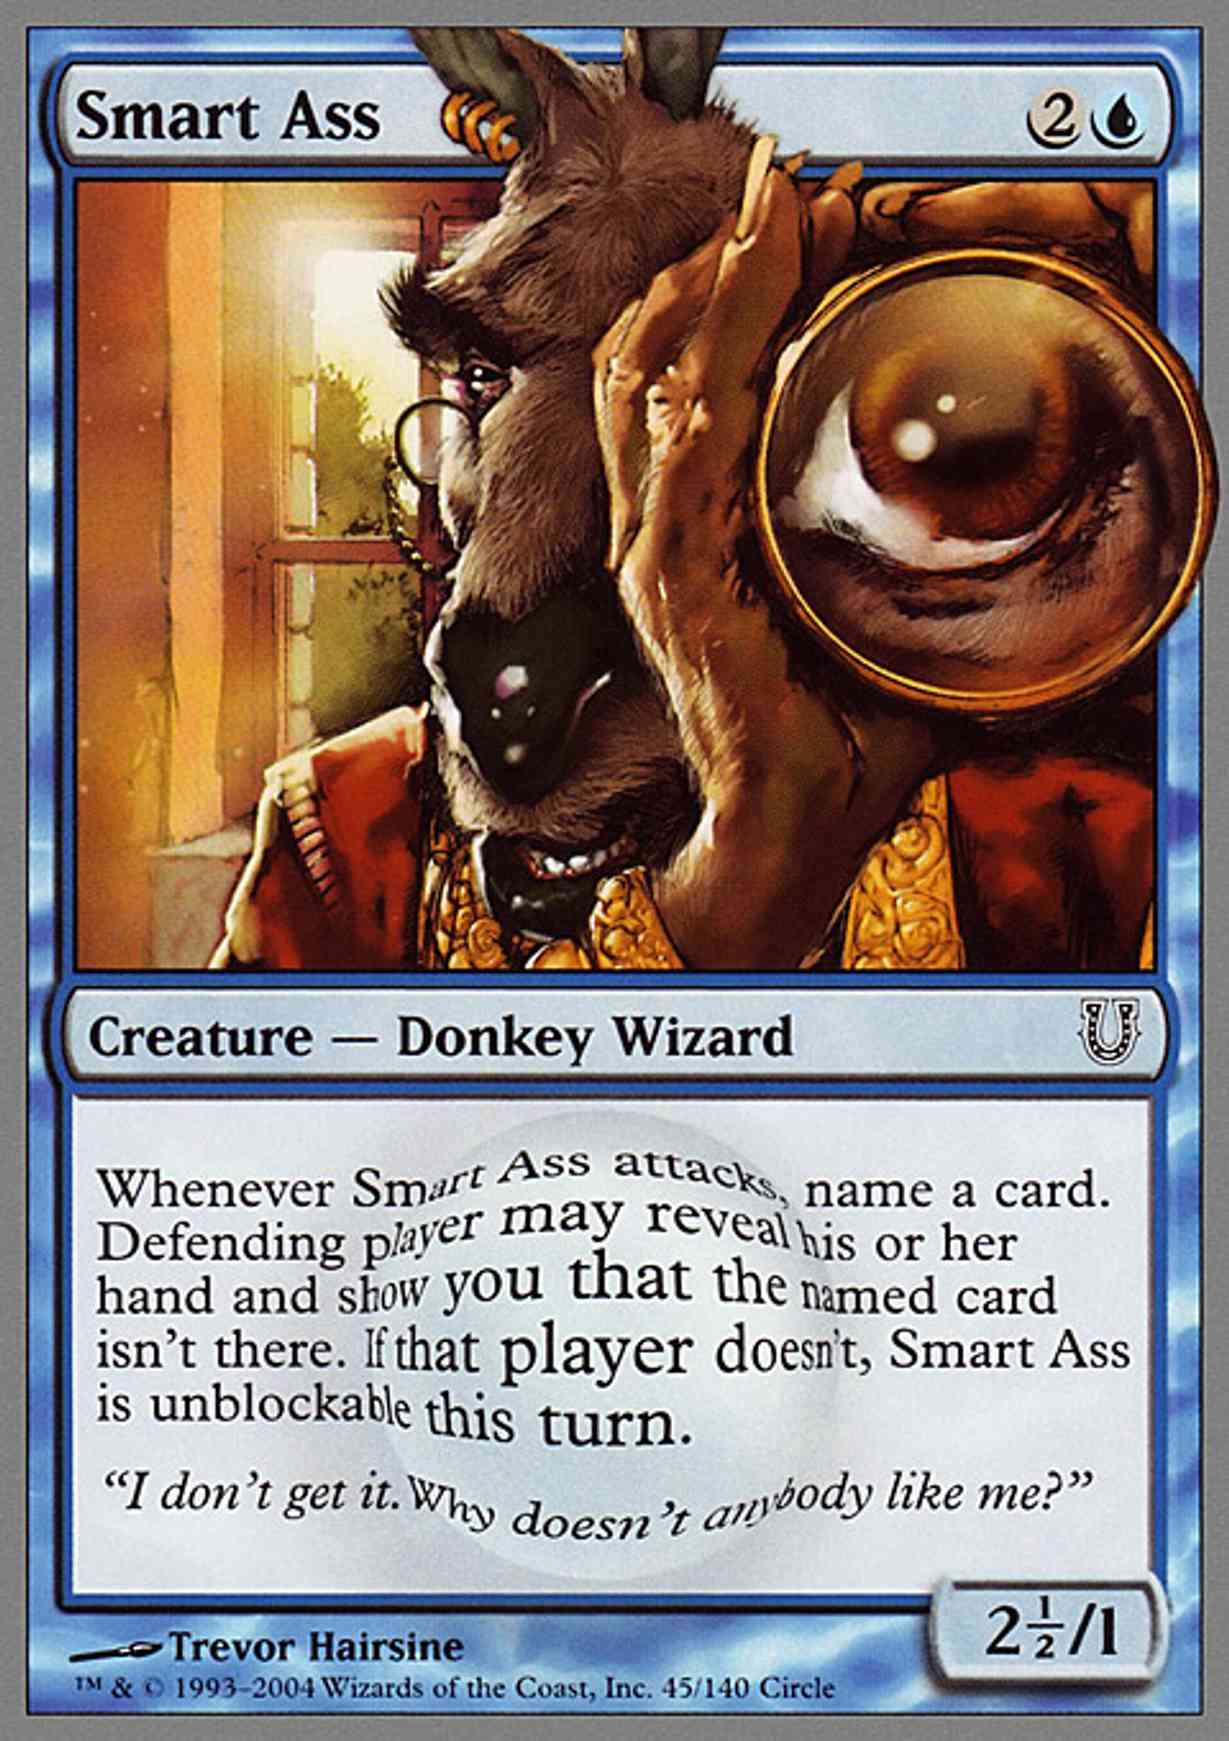 Smart Ass magic card front